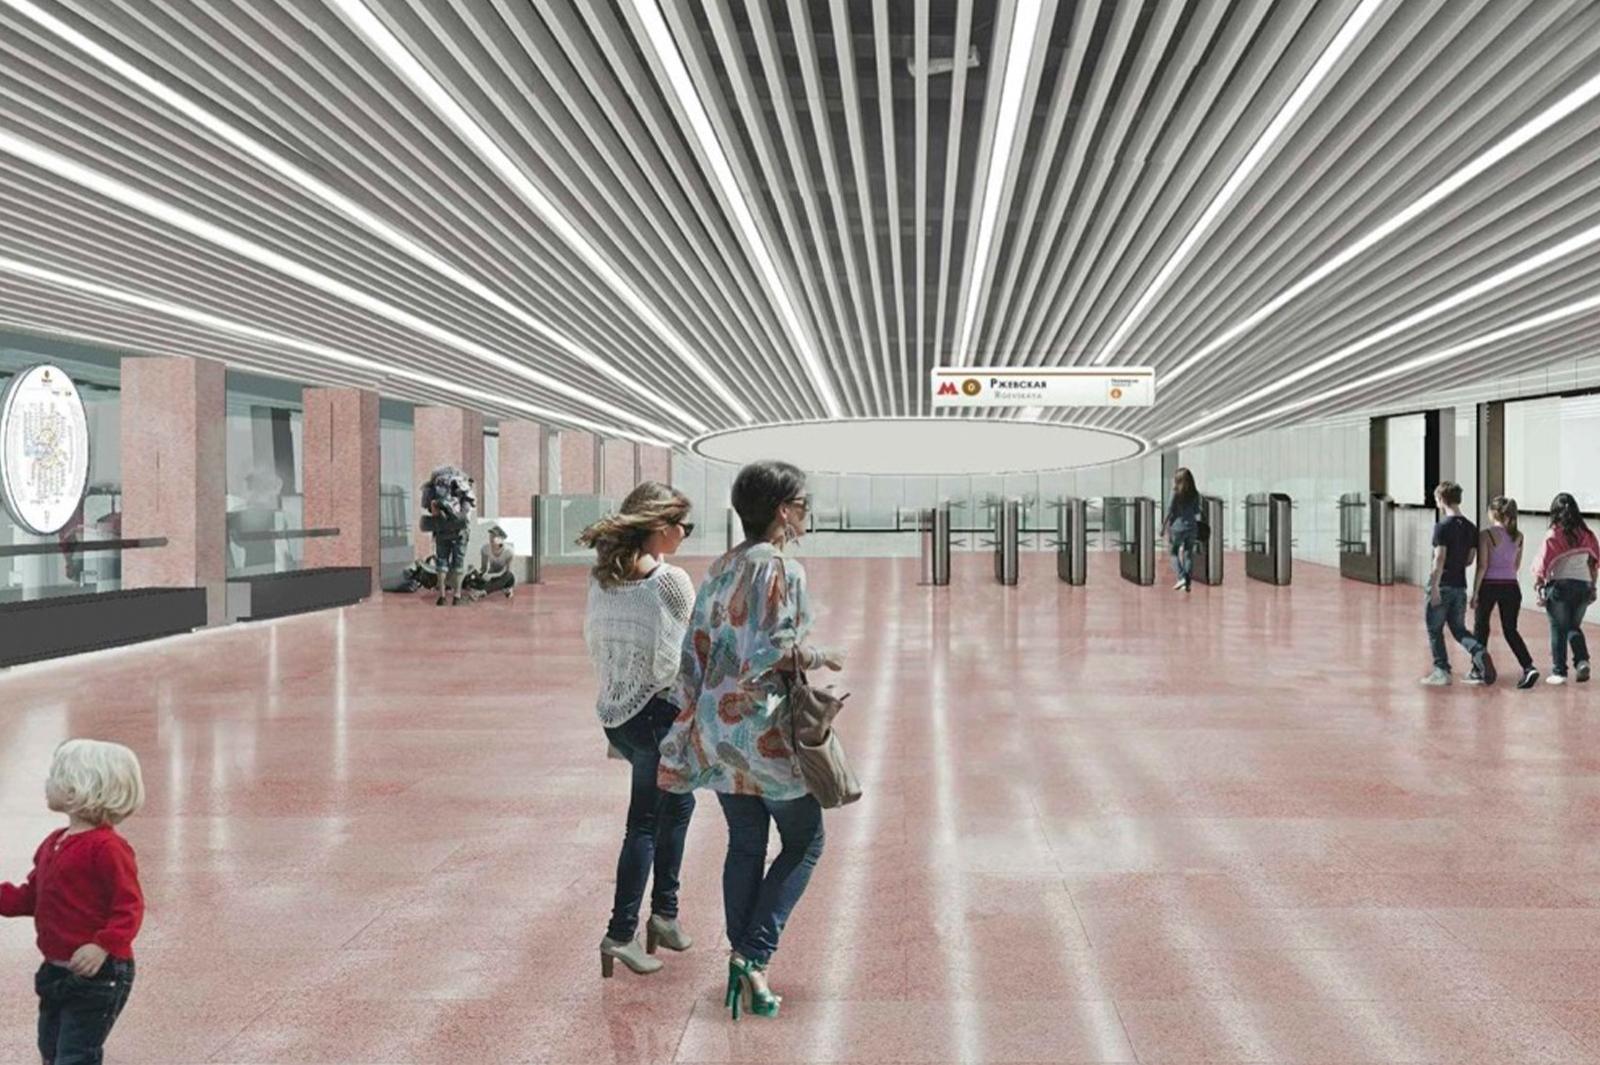 Строительство пассажирской платформы началось на станции «Рижская» Большого кольца метро